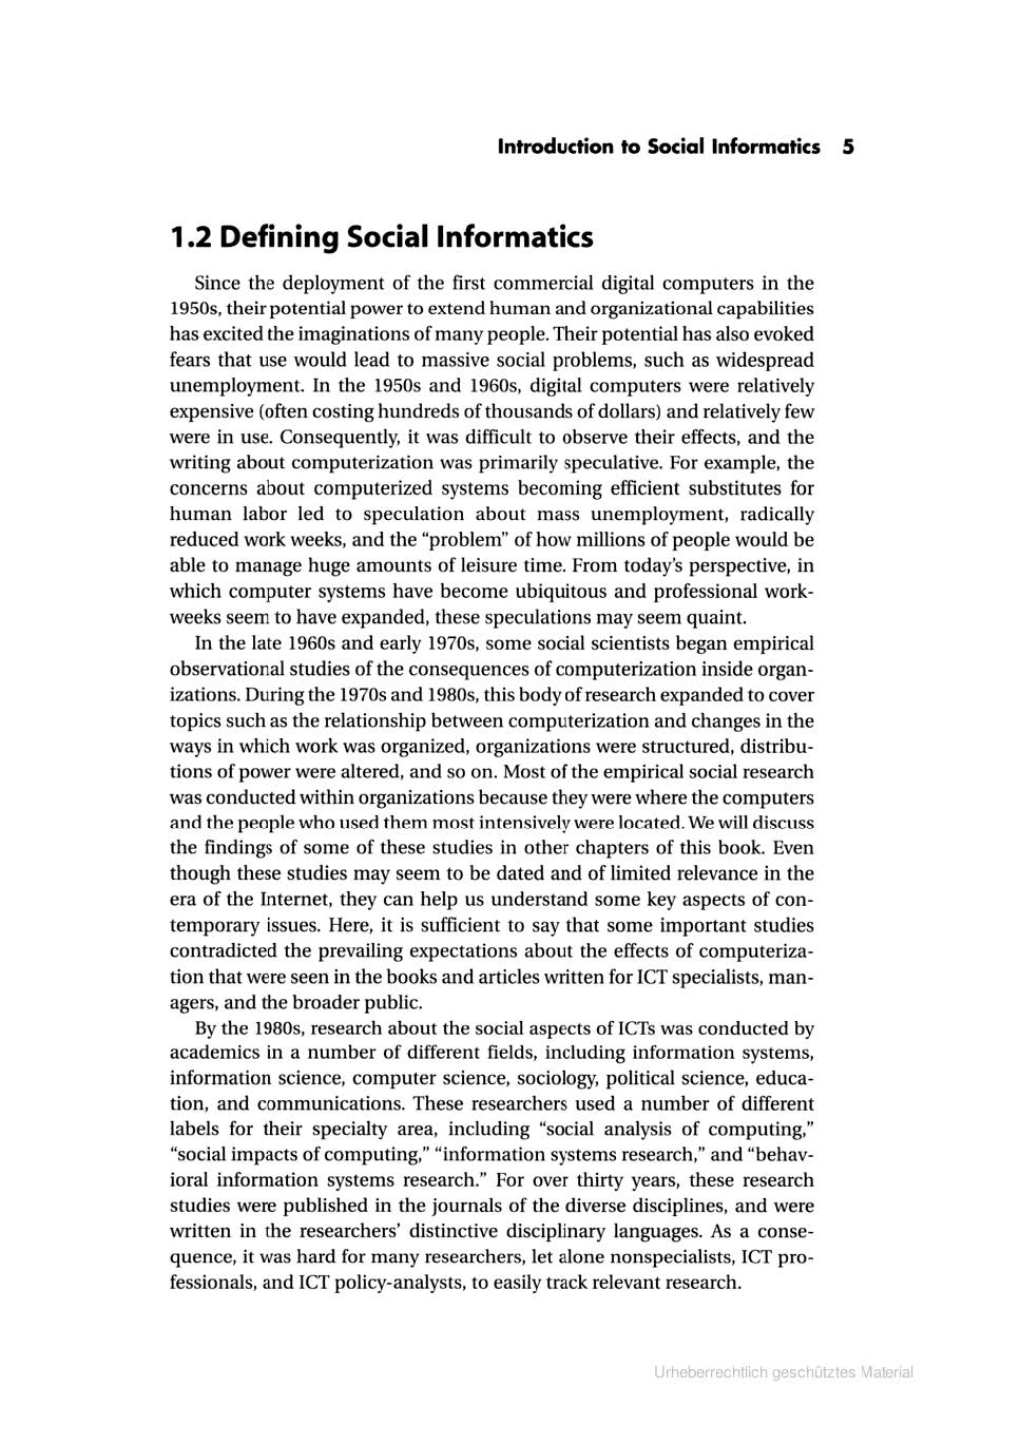 1.2 Defining Social Informatics